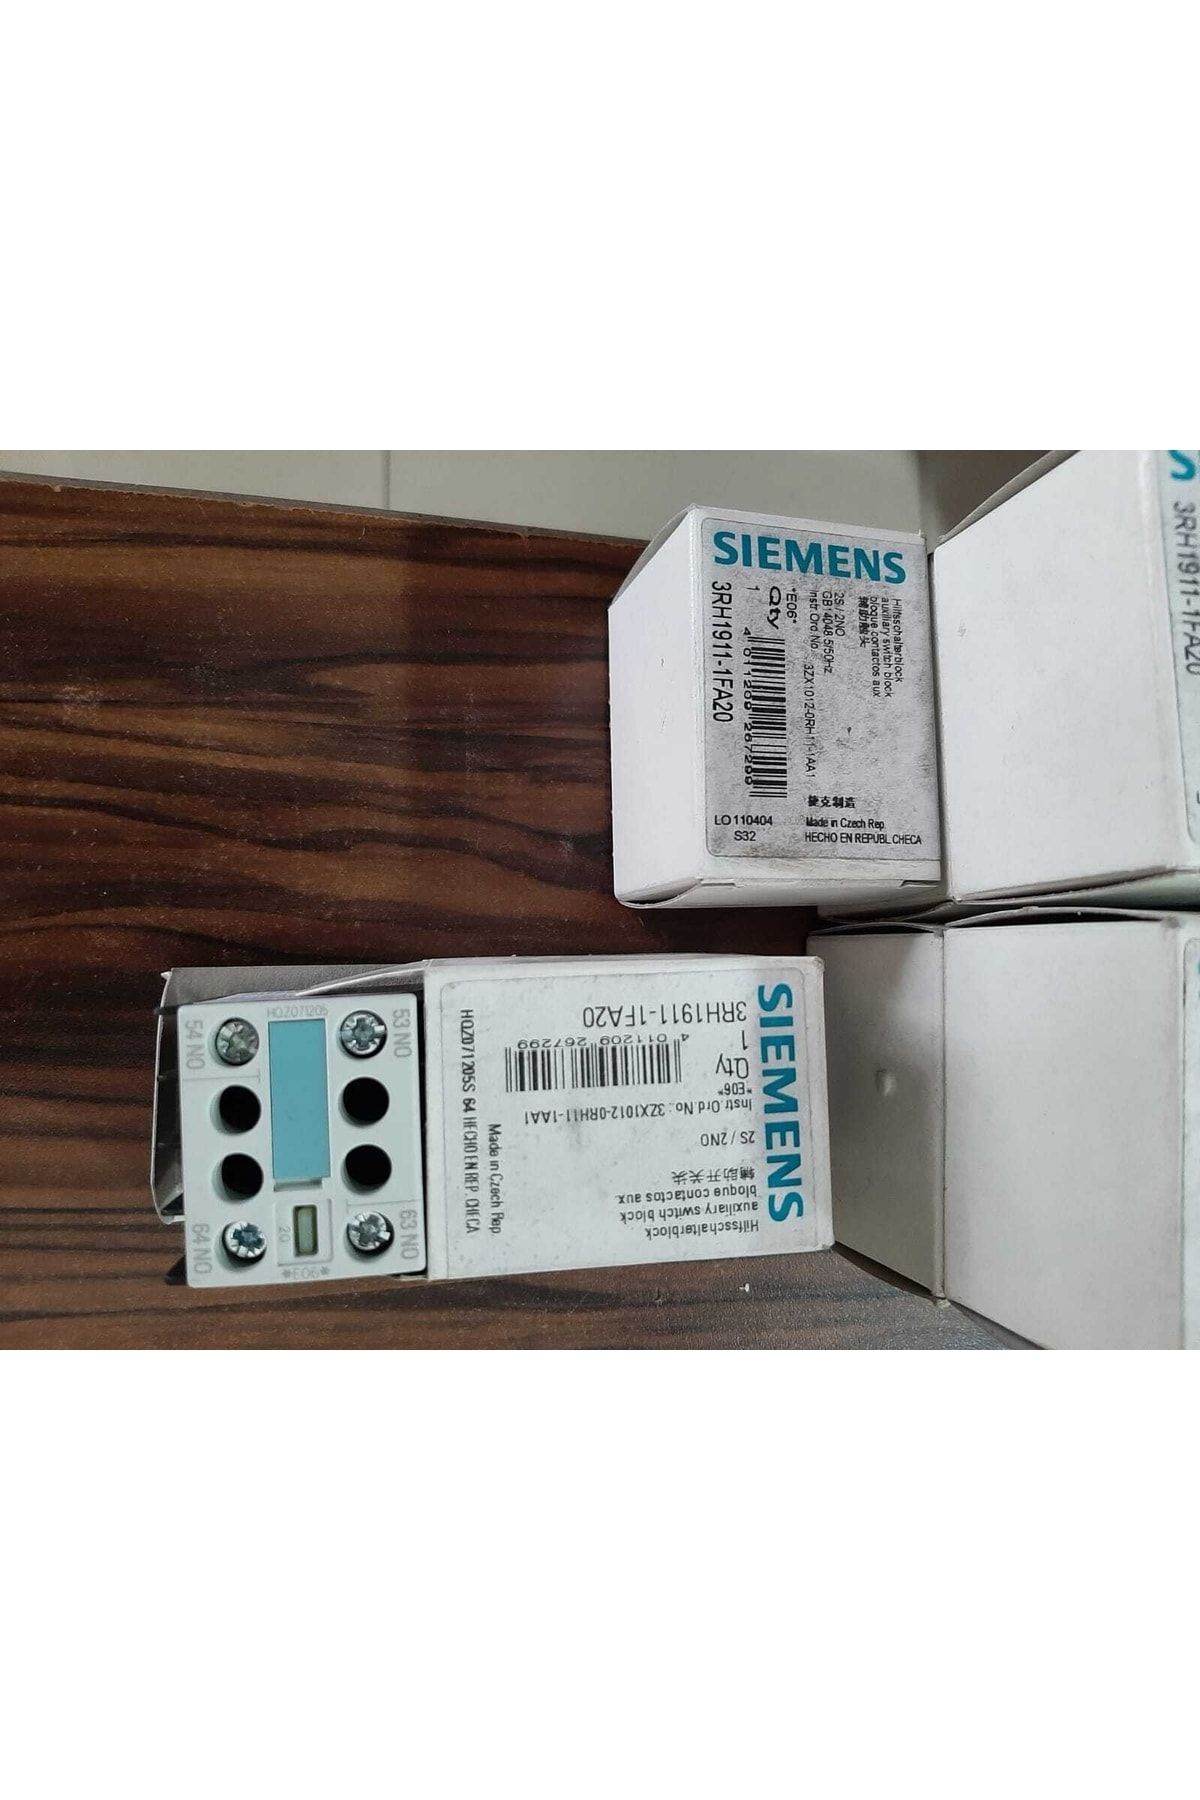 Siemens 3rh1911-1fa20